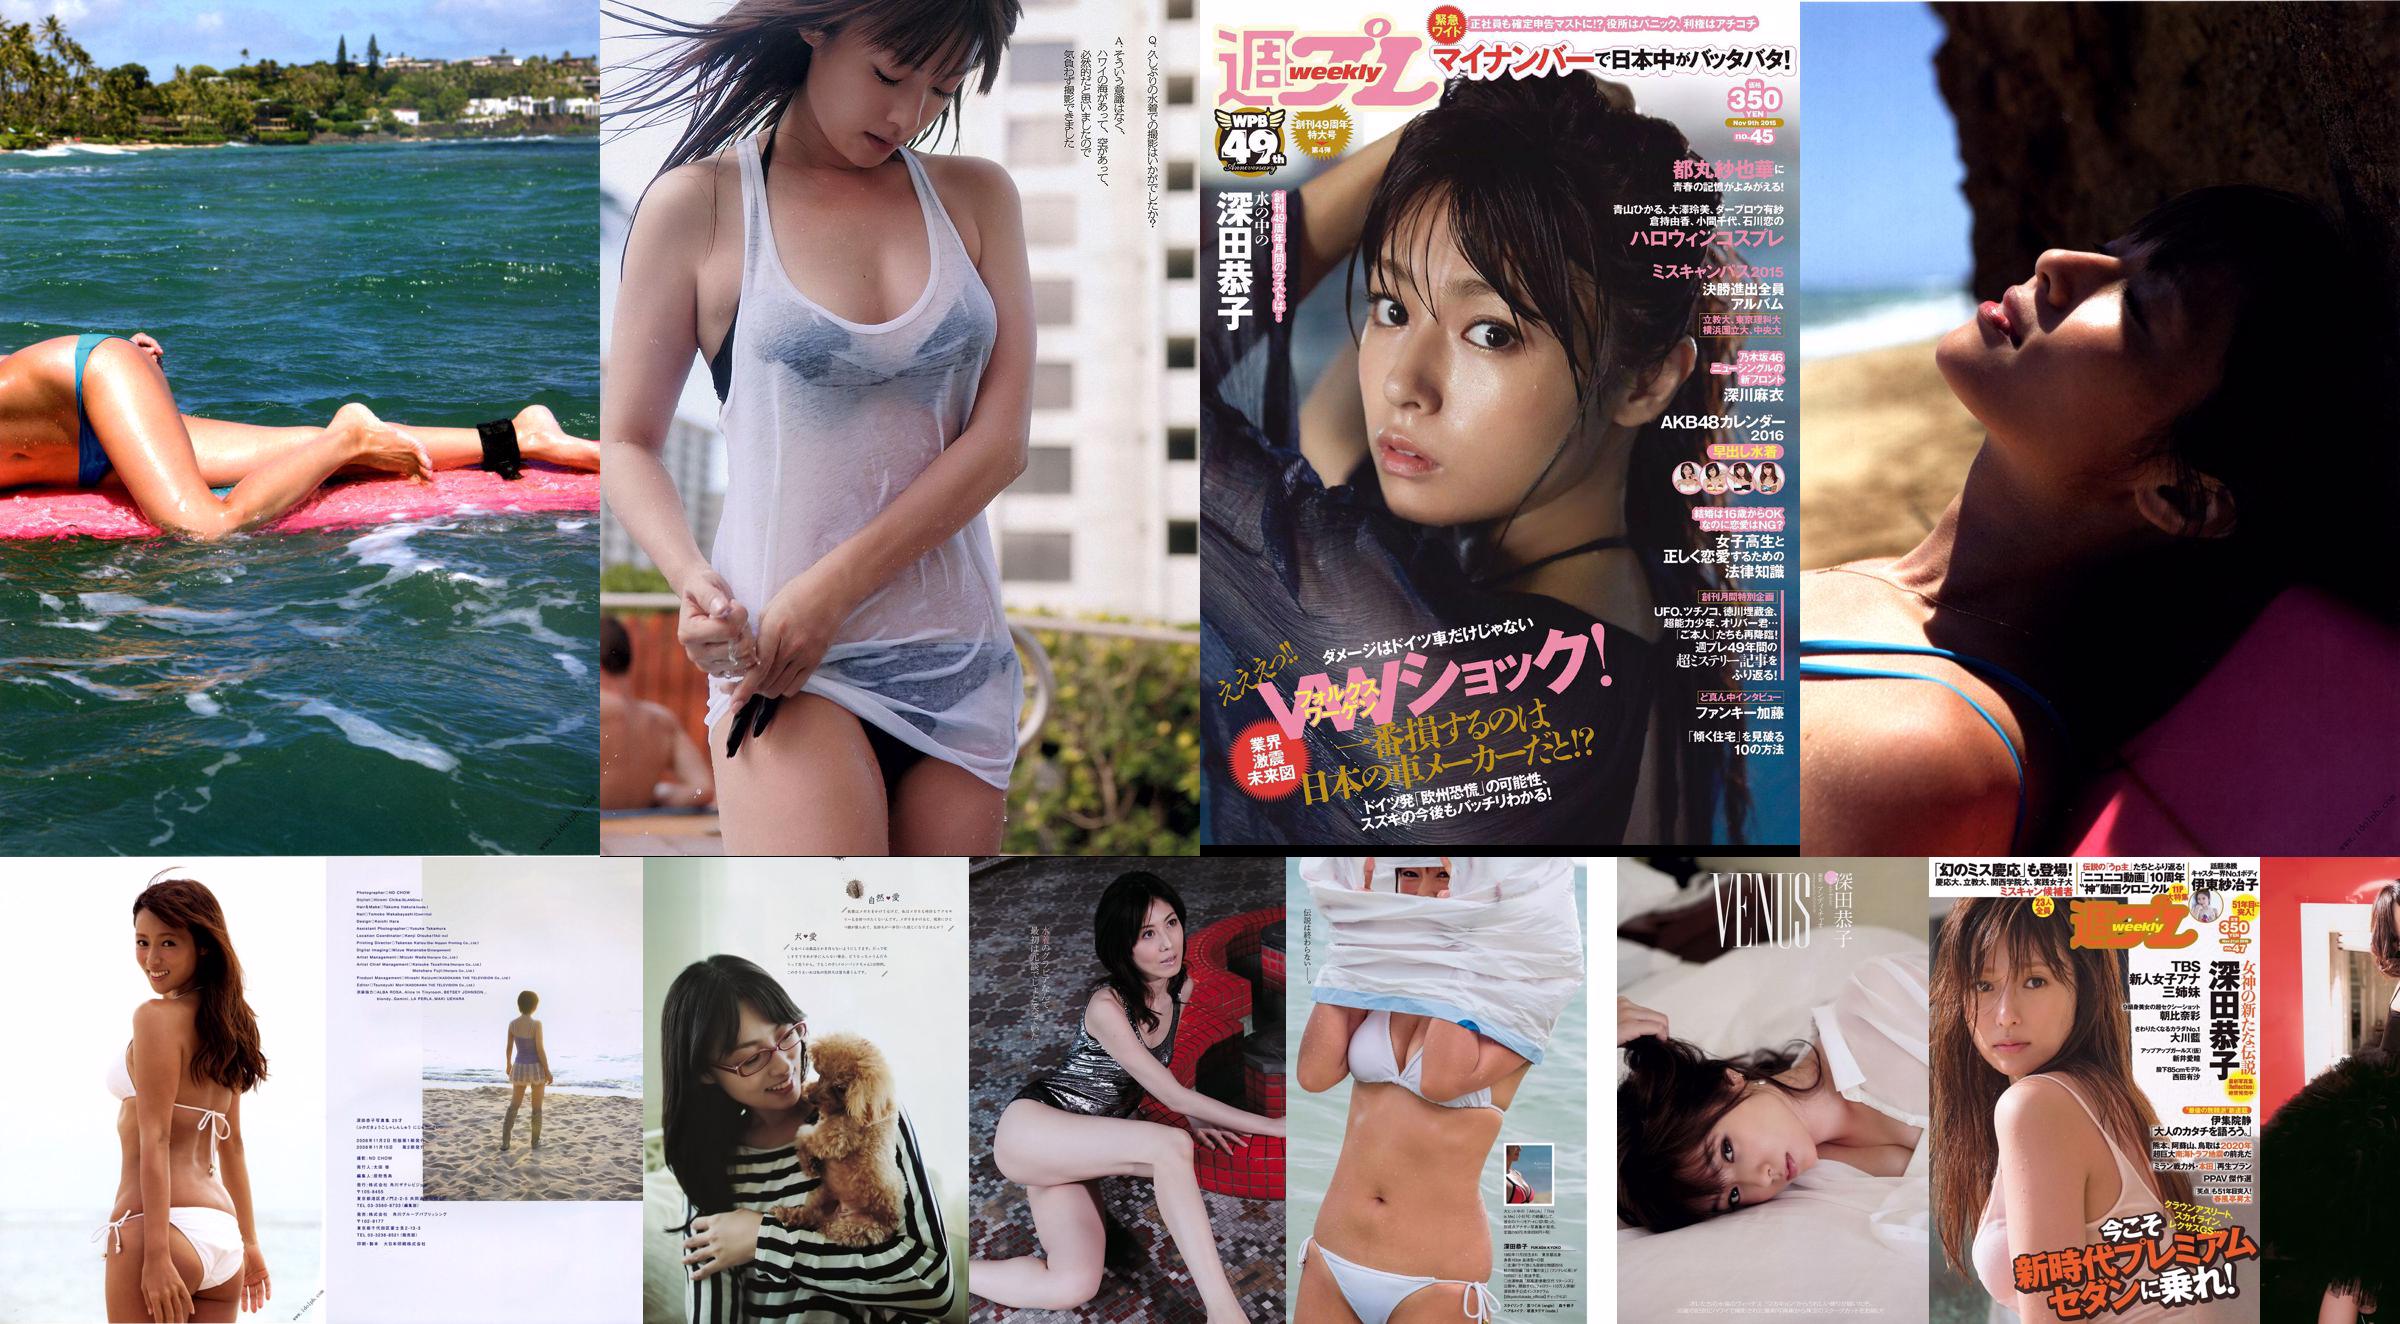 Kyoko Fukada Fumina Suzuki Mai Fukagawa Sayaka Tomaru Asana Mamoru [Weekly Playboy] 2015 No.45 Photograph No.e856ff Page 1